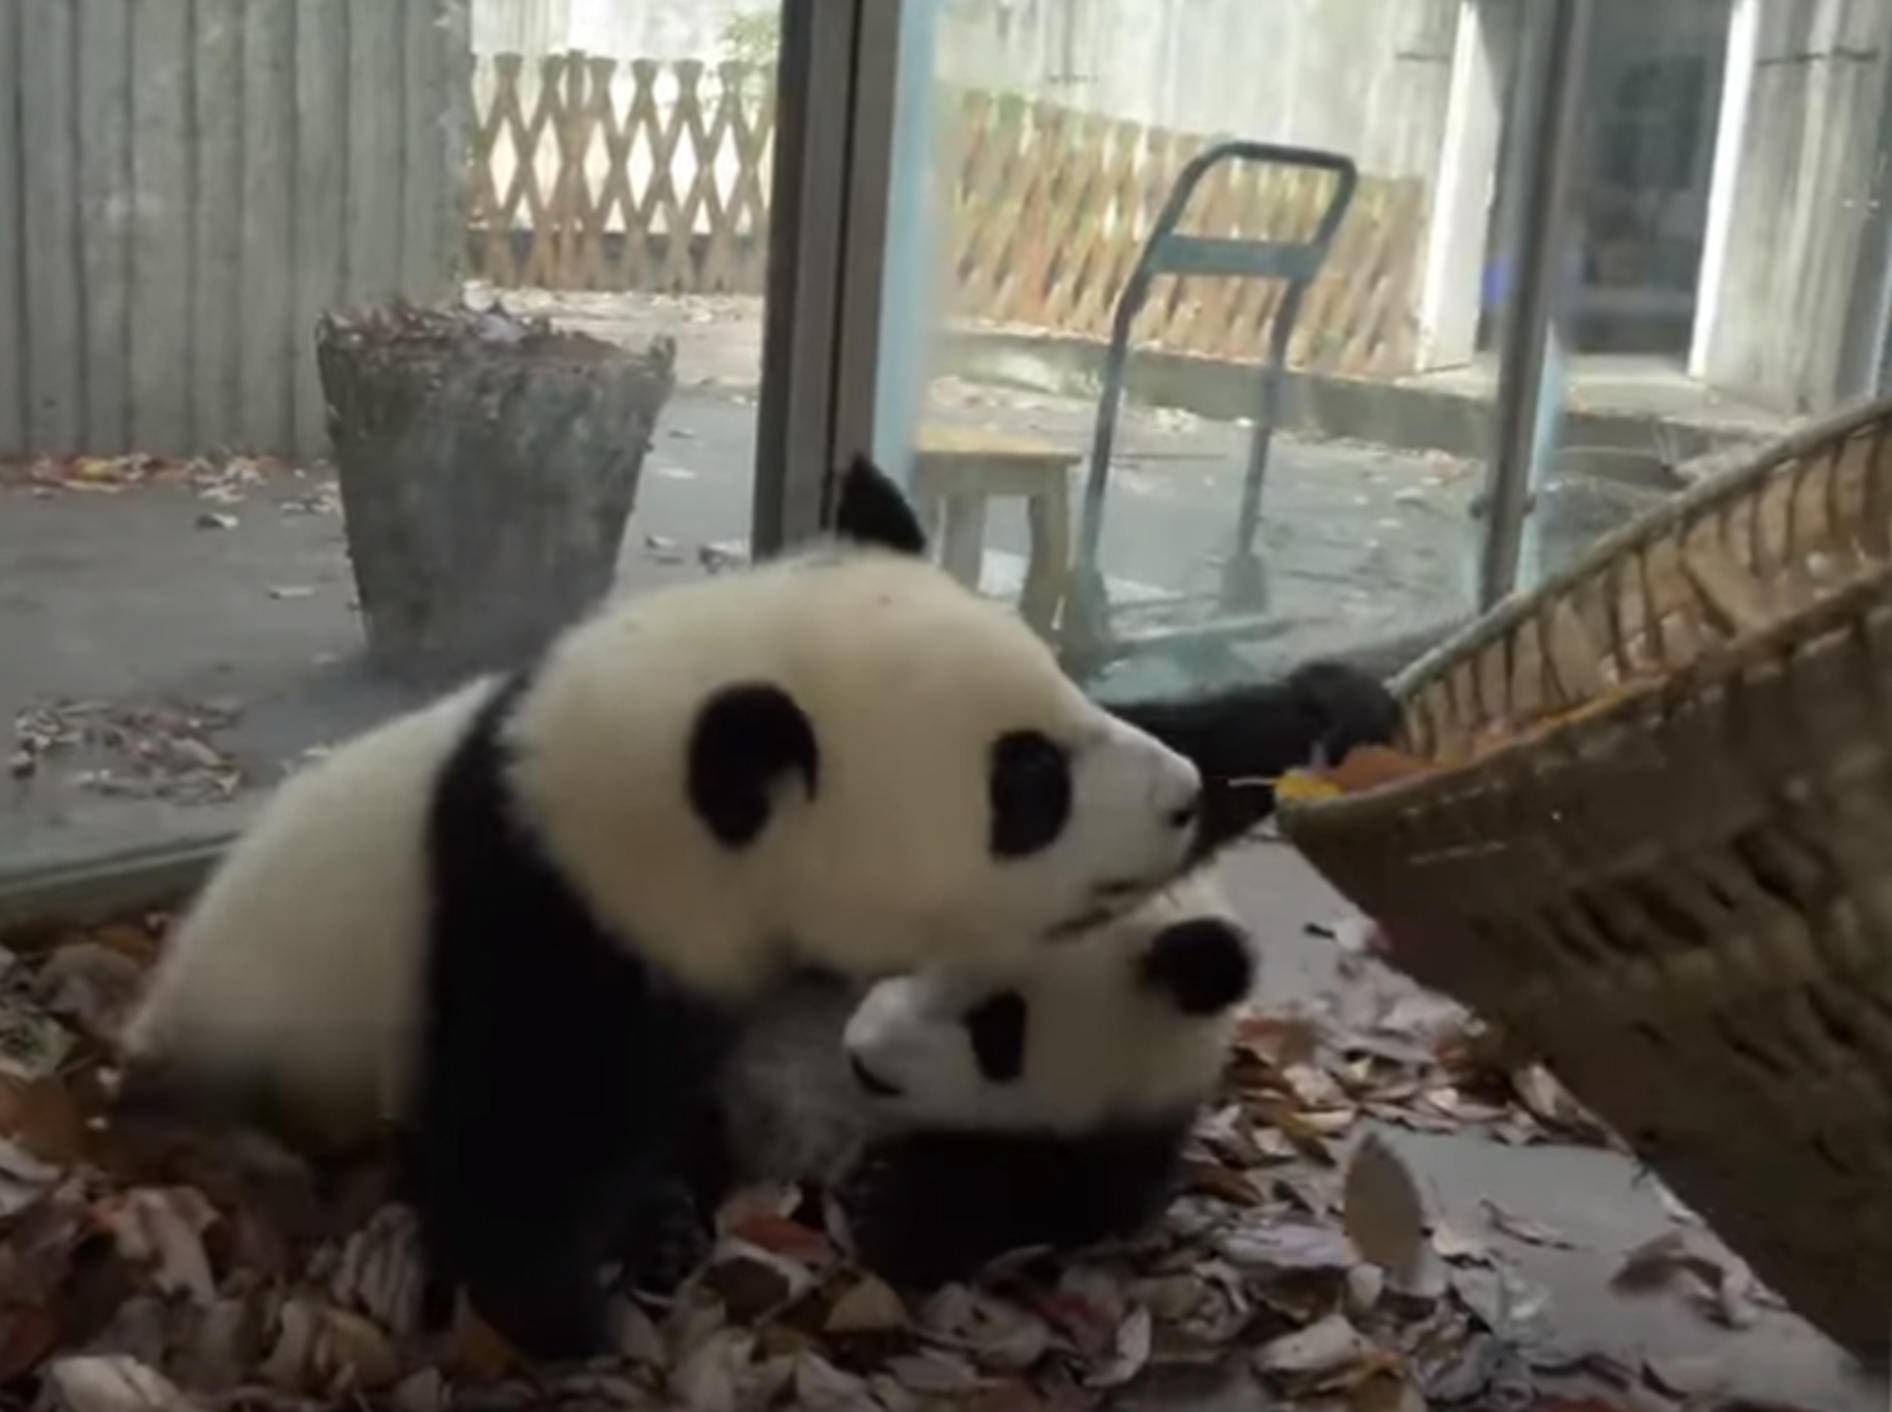 Diese Pandas haben Spaß im Laub - Bild: YouTube / 游浮生